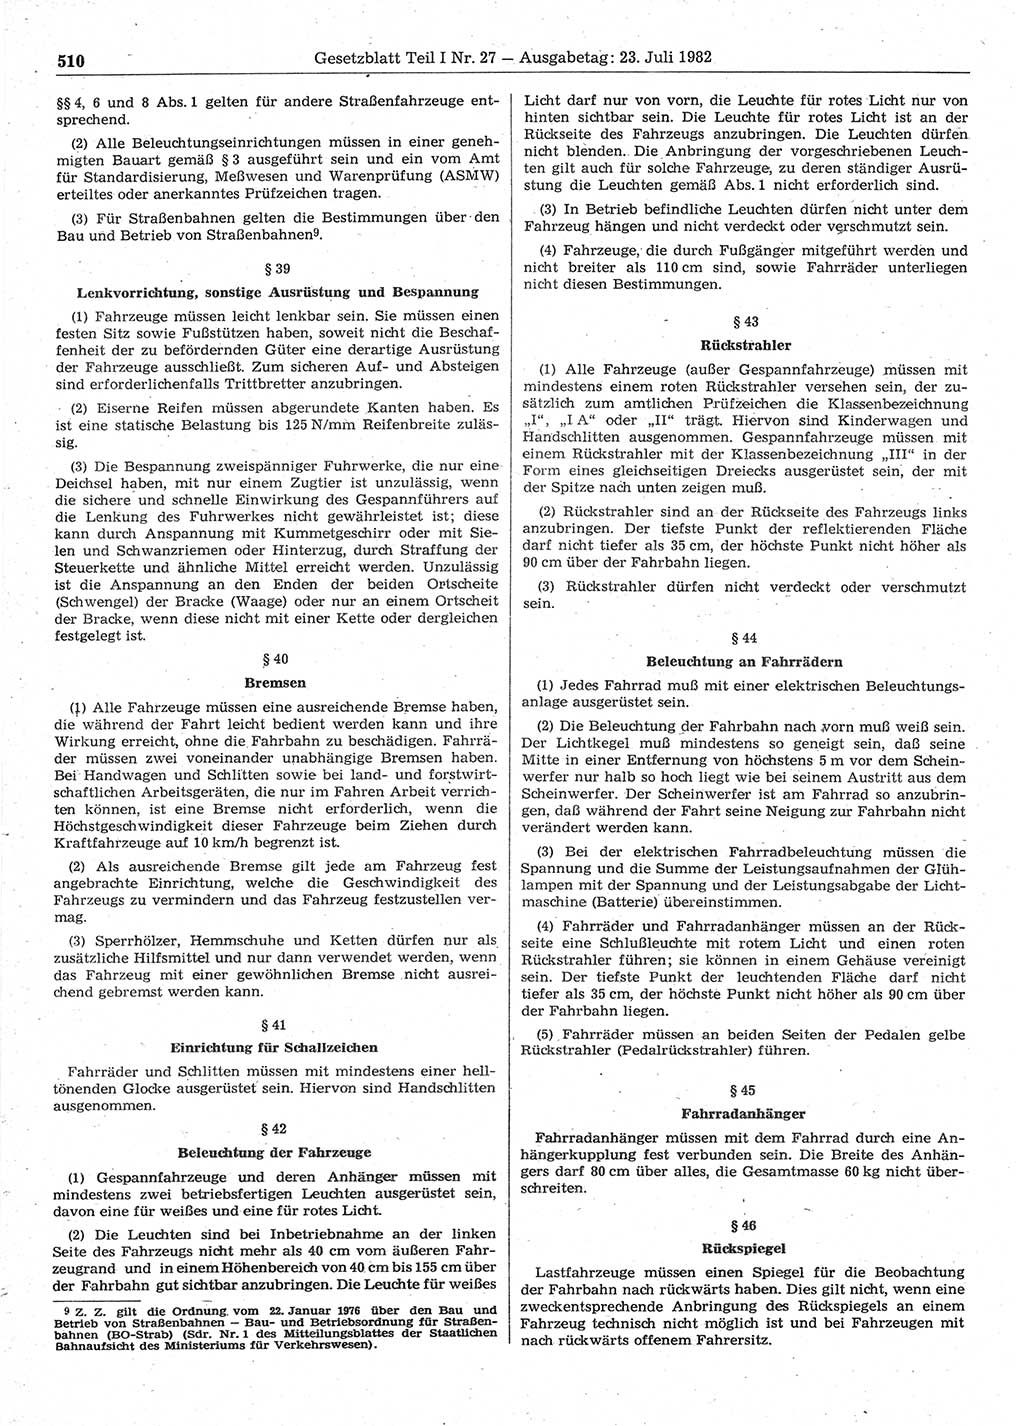 Gesetzblatt (GBl.) der Deutschen Demokratischen Republik (DDR) Teil Ⅰ 1982, Seite 510 (GBl. DDR Ⅰ 1982, S. 510)